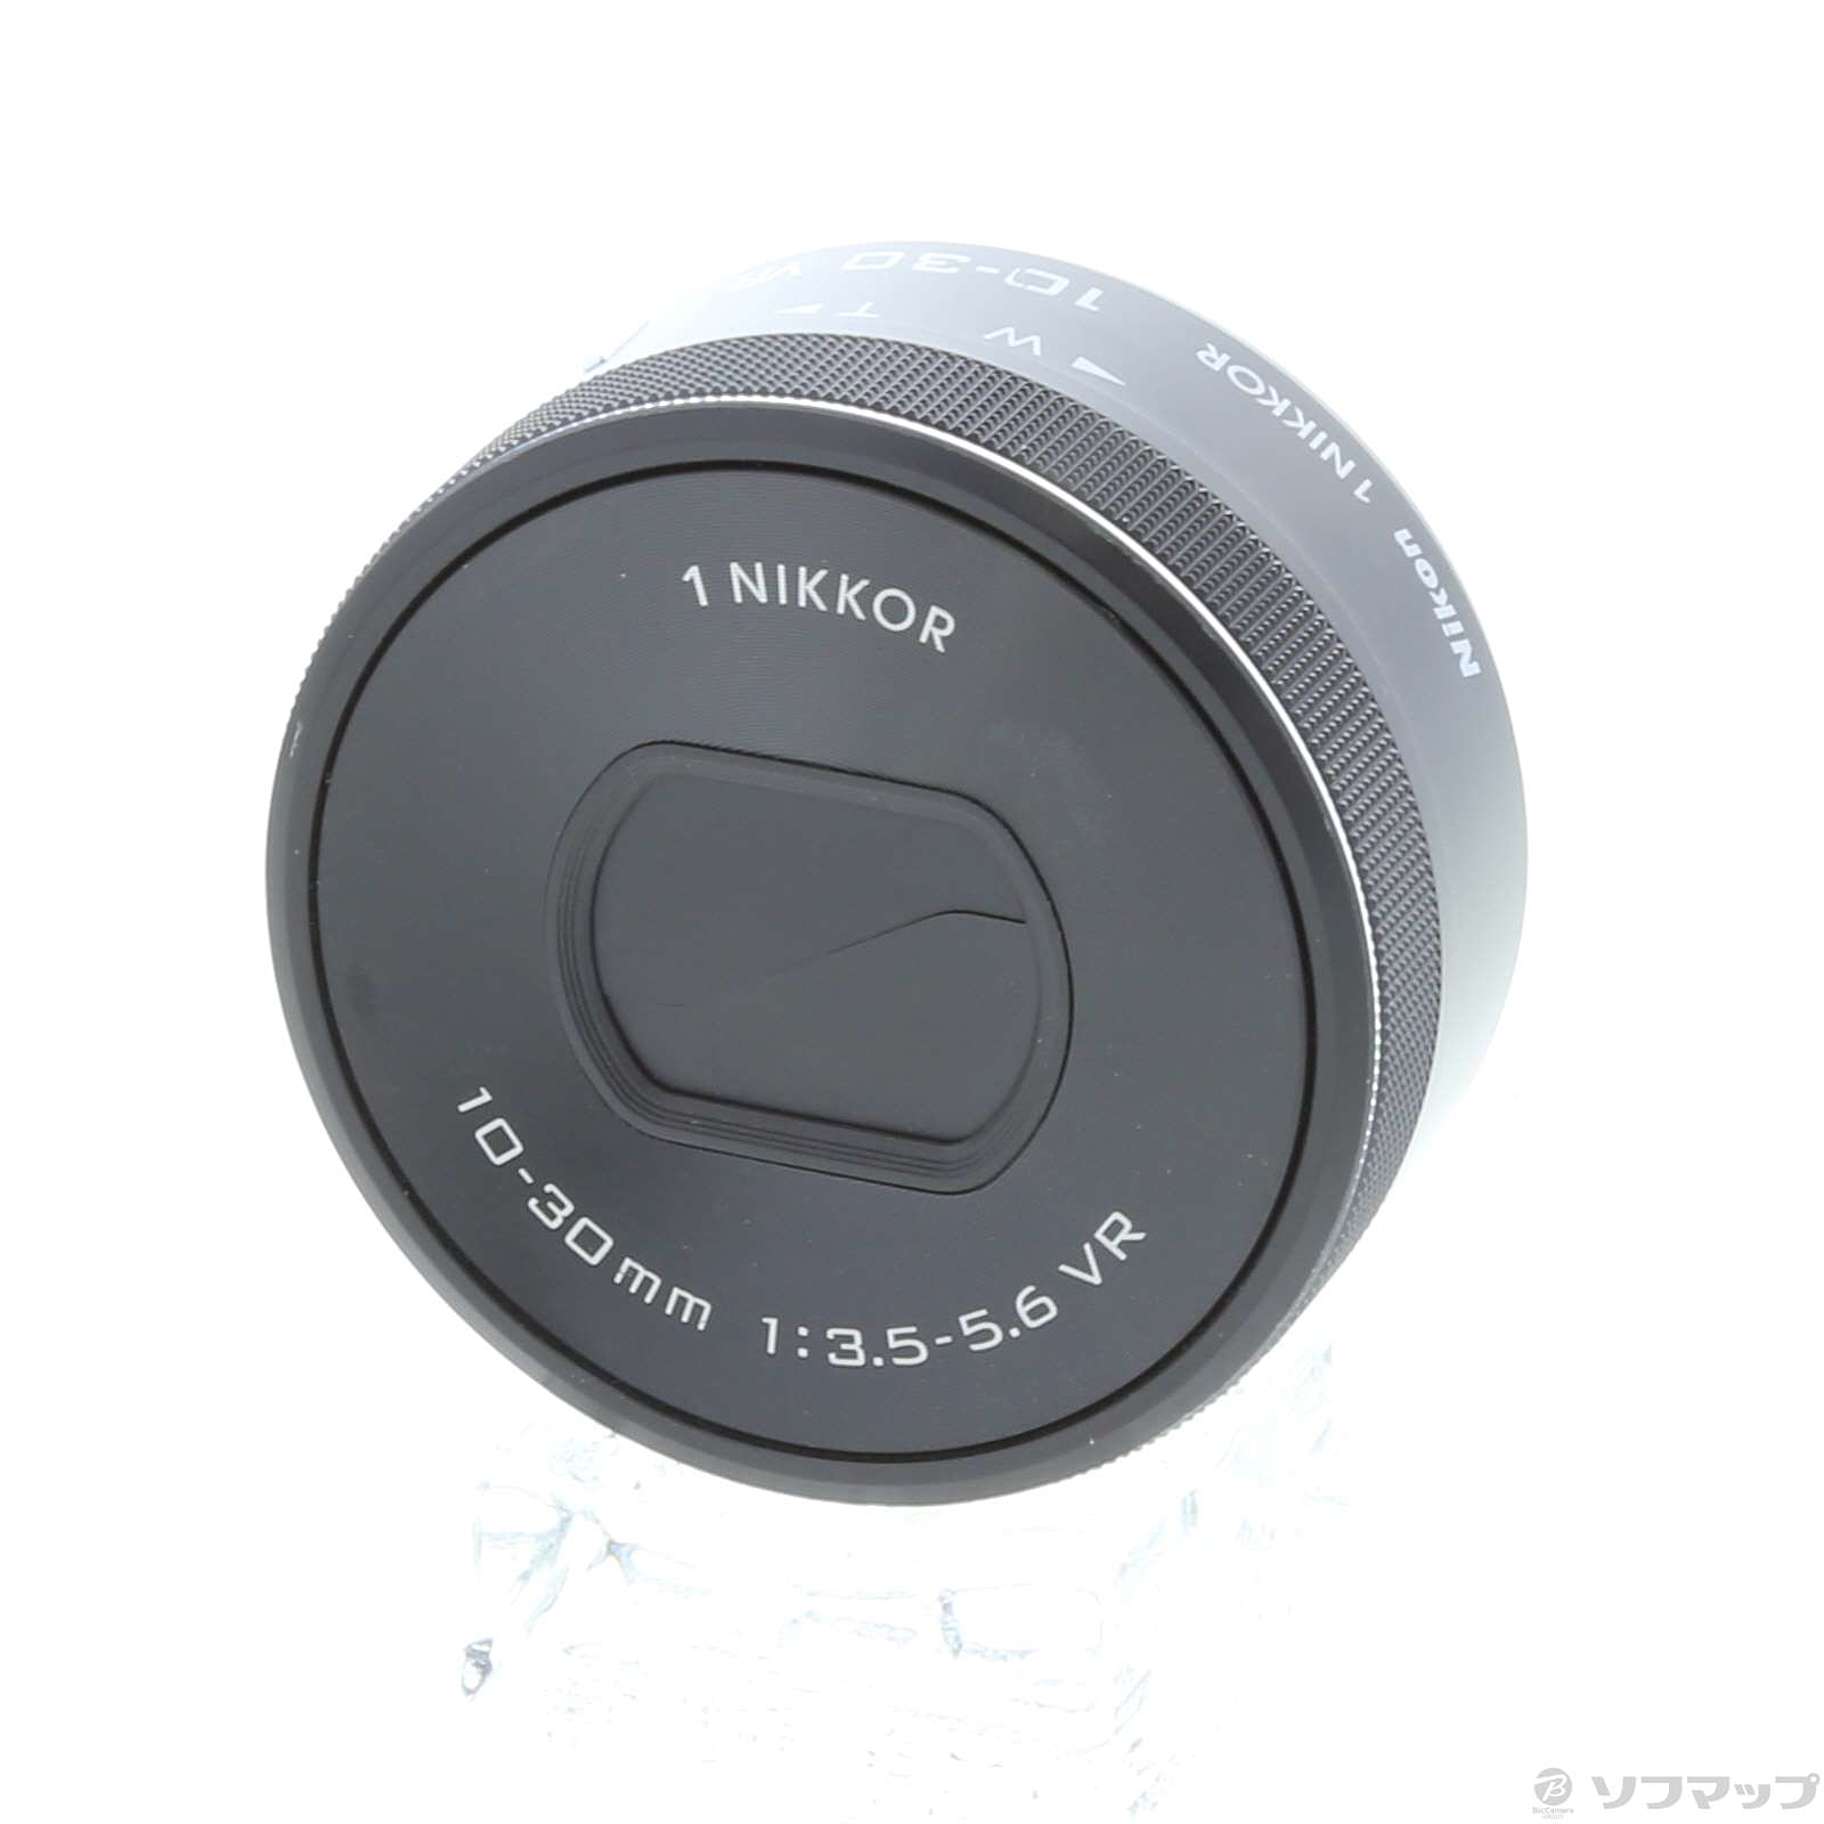 中古】1 NIKKOR VR 10-30mm F3.5-5.6 PD-ZOOM (ブラック